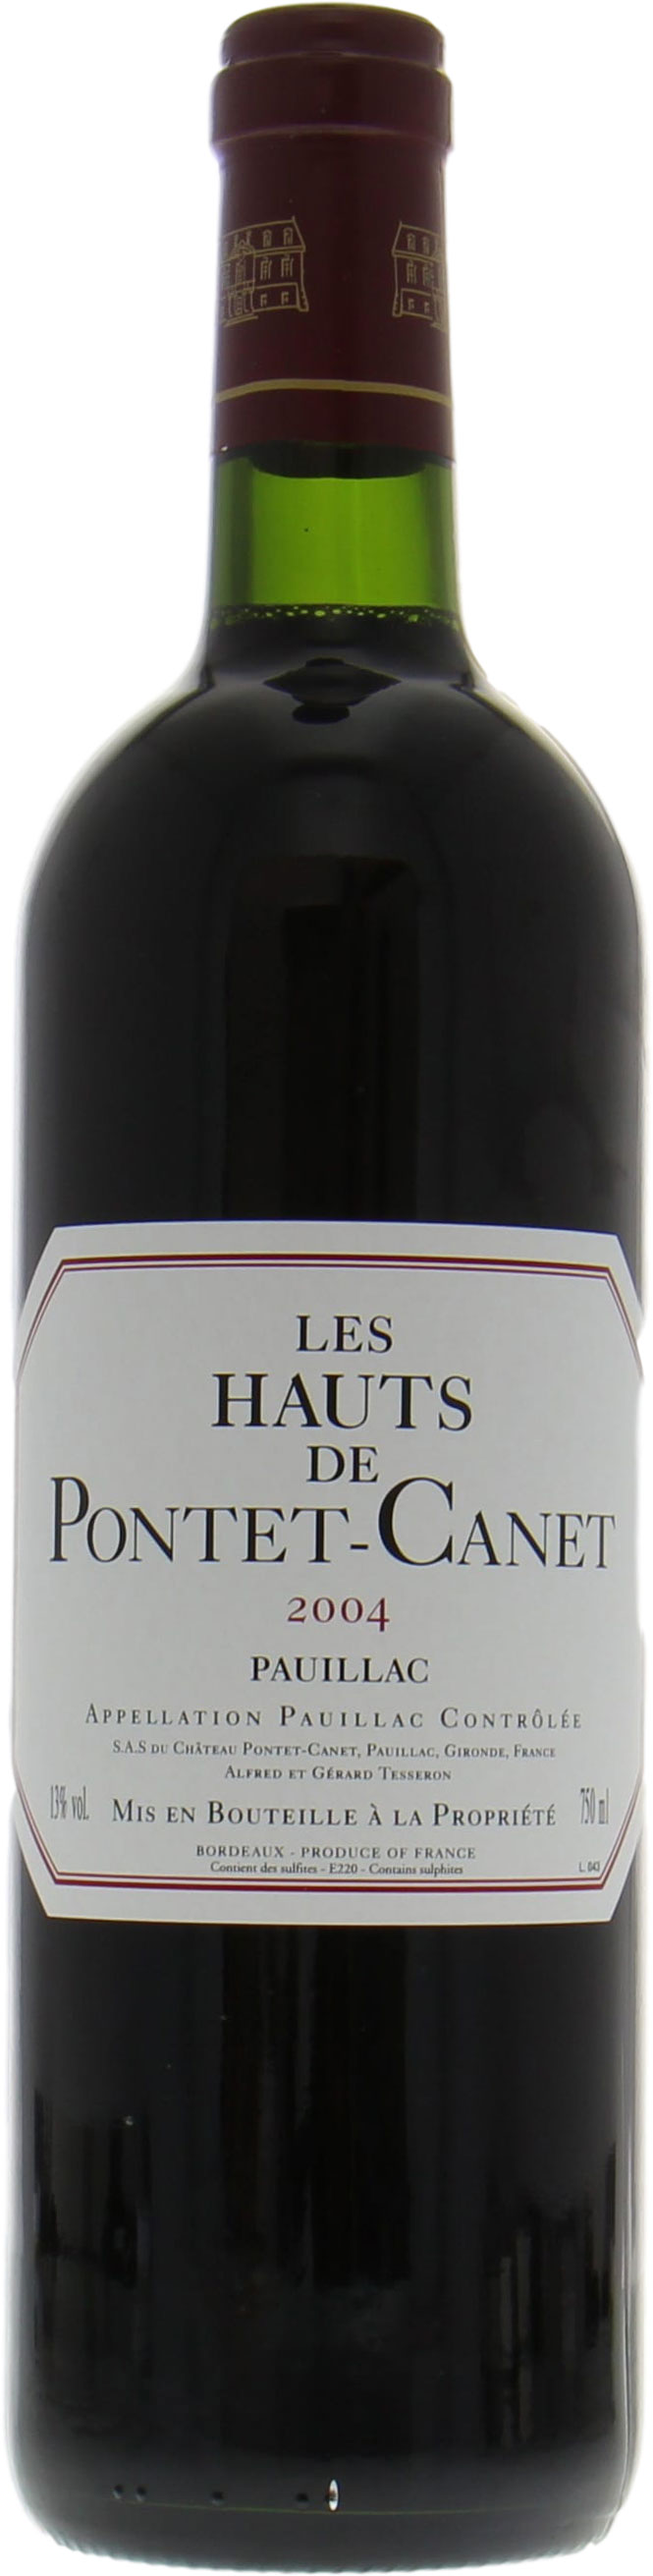 Chateau Les Hauts de Pontet-Canet - Chateau Les Hauts de Pontet-Canet 2004 Perfect